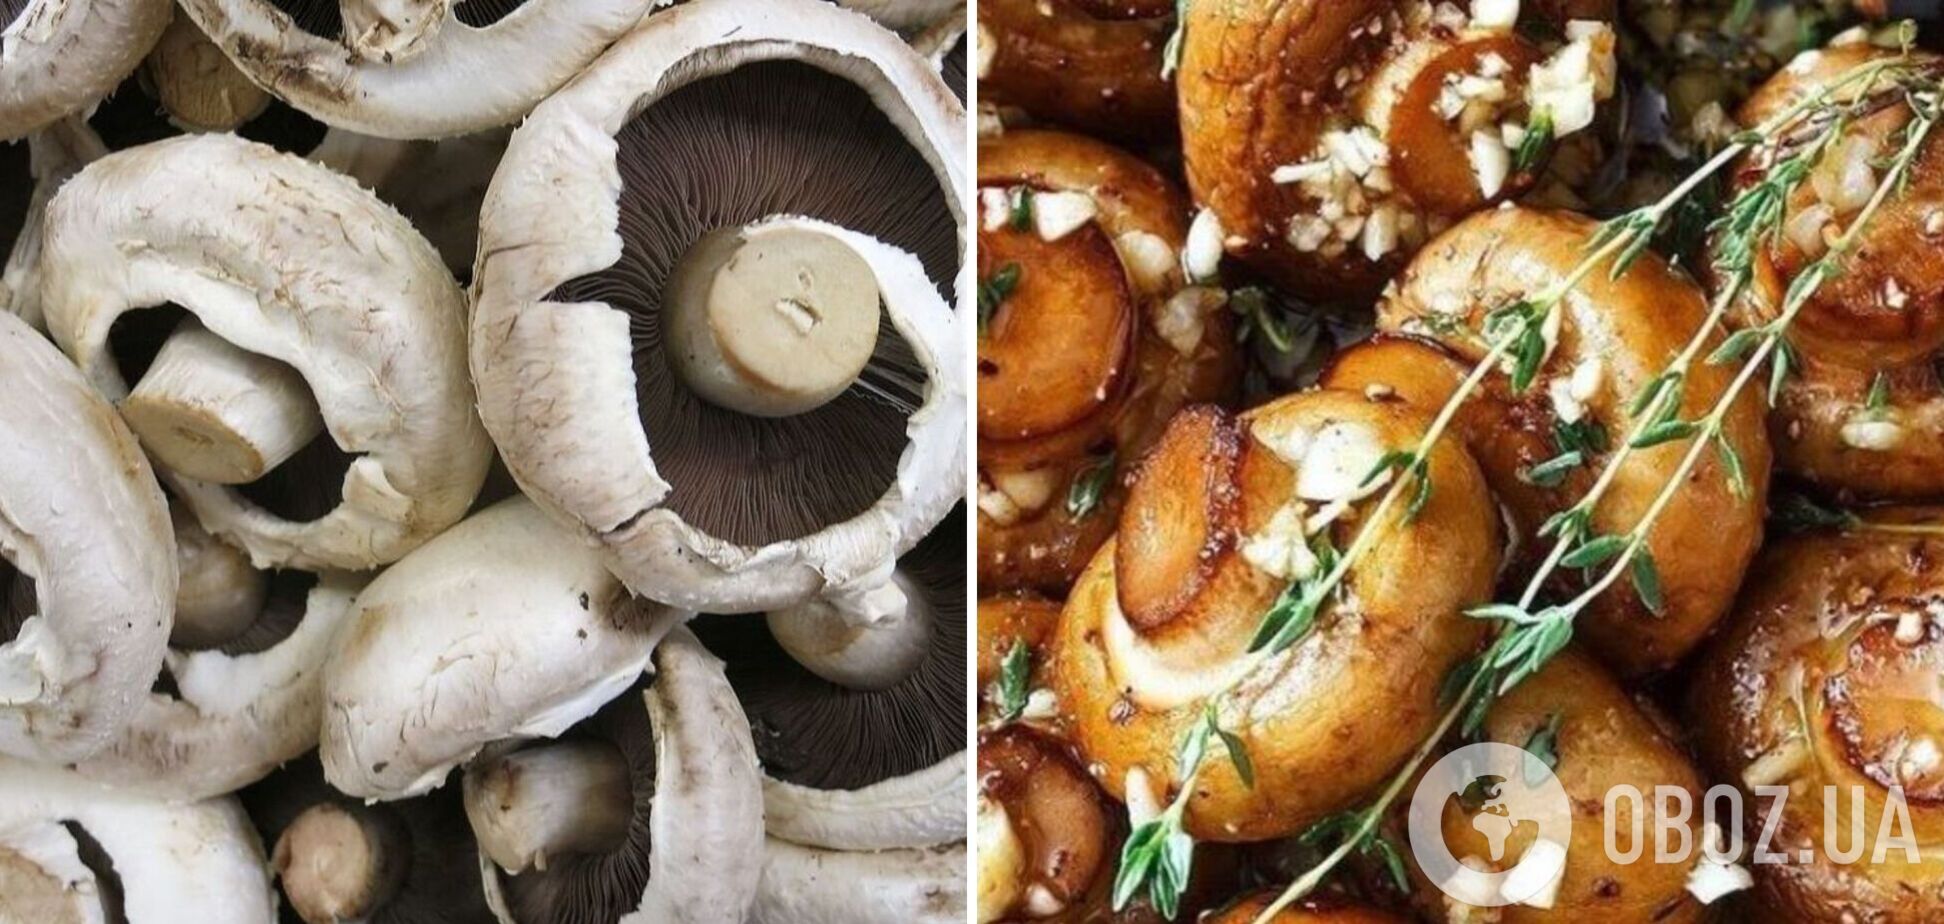 Маринованные грибы